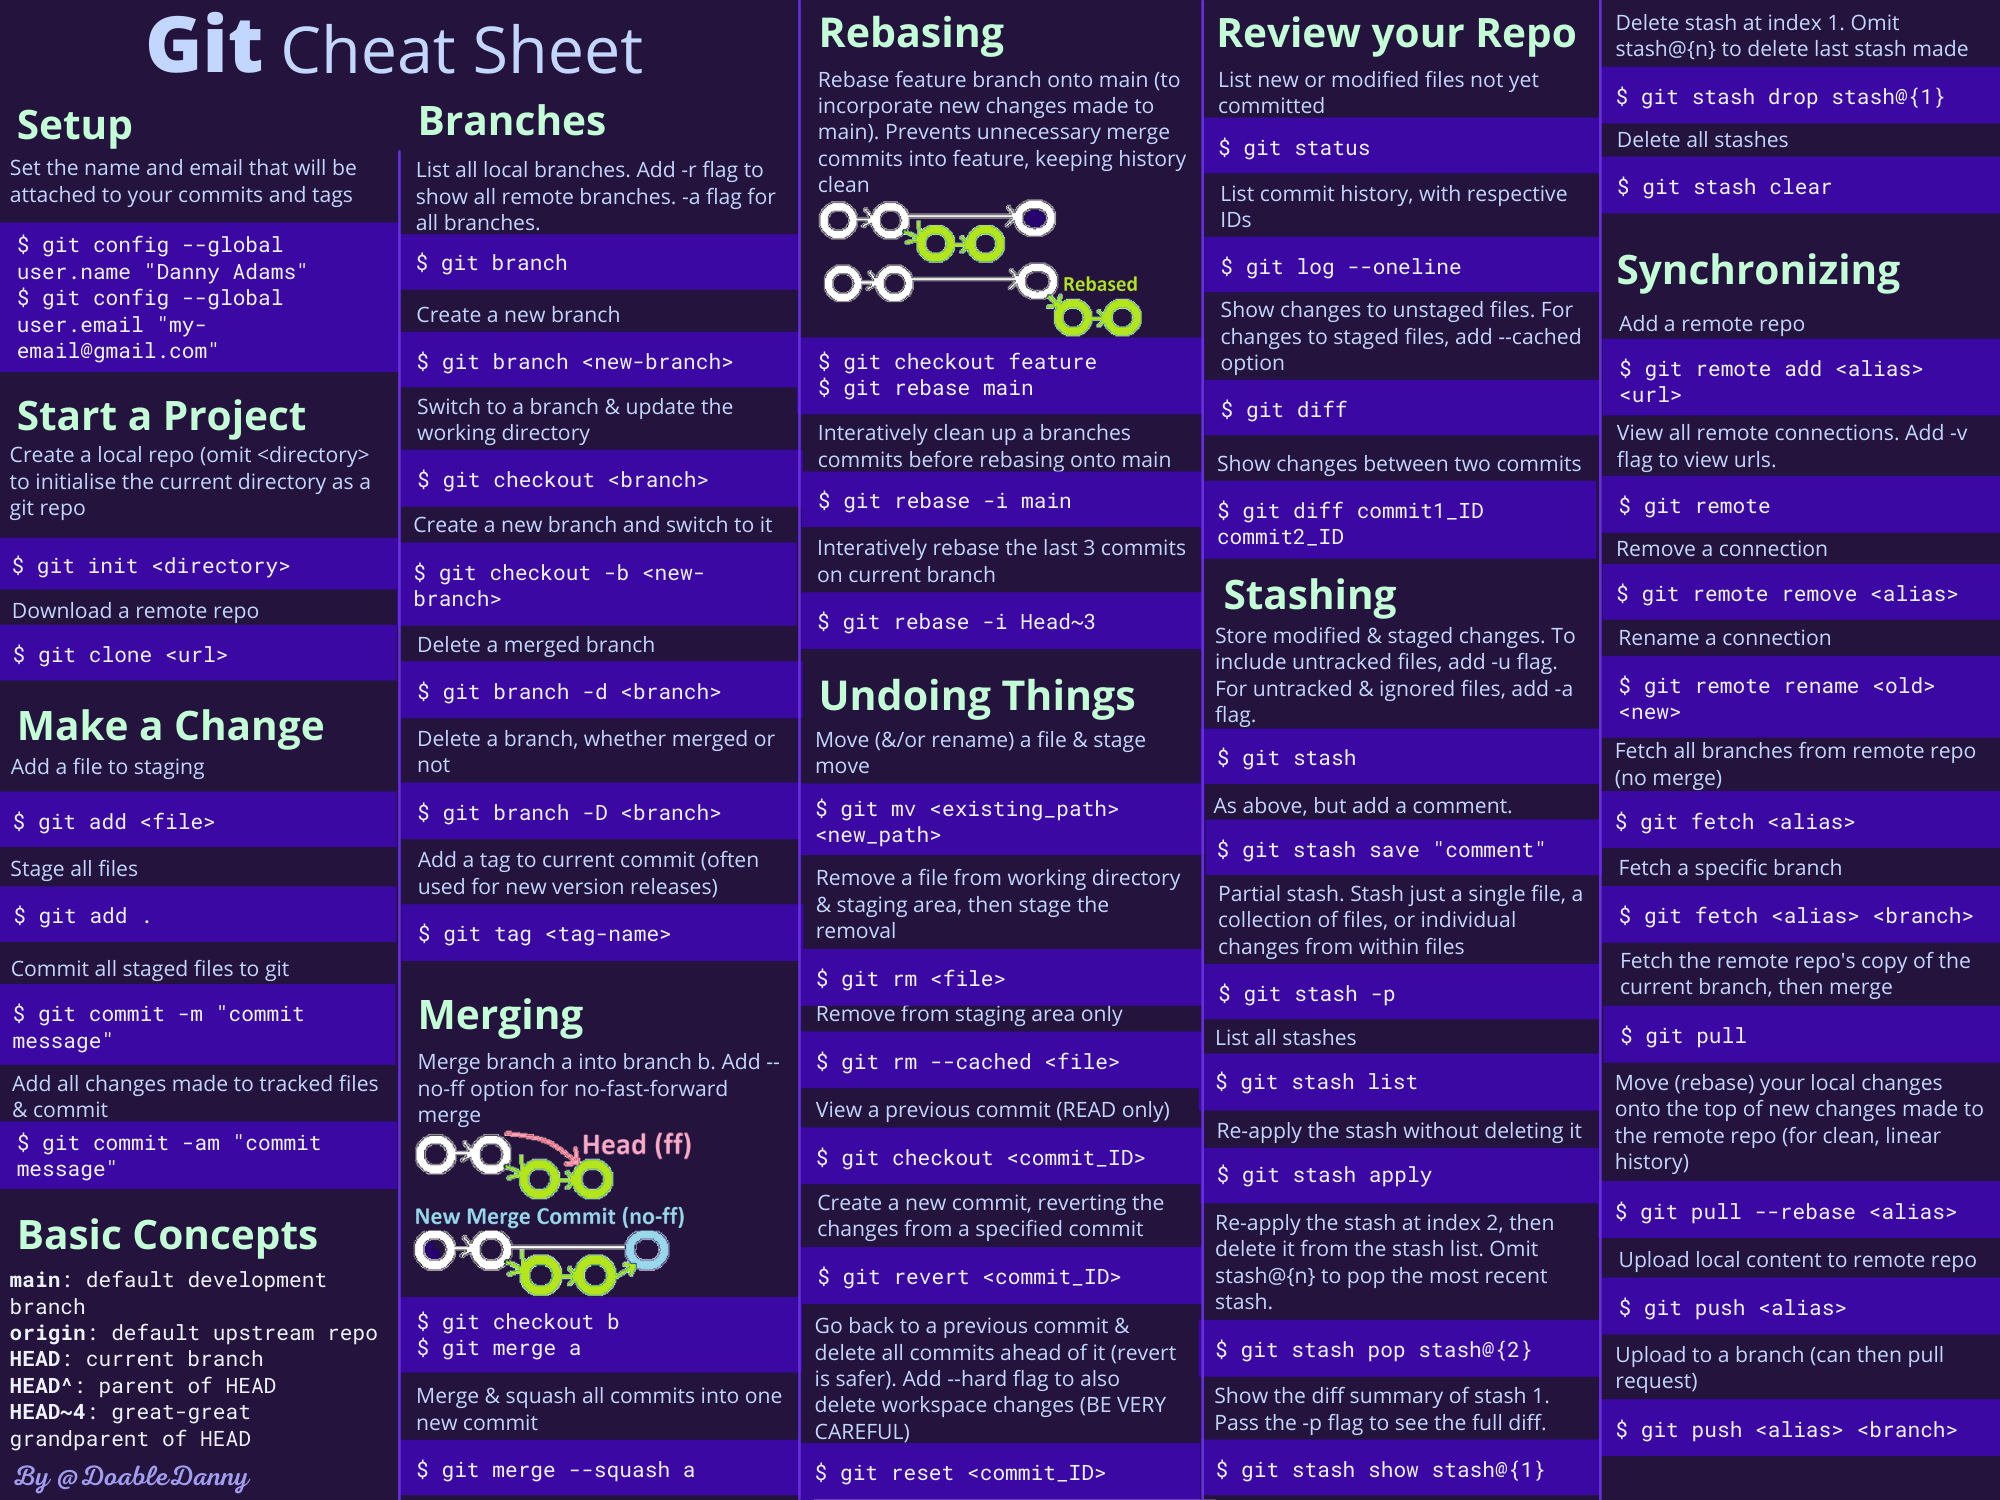 Git Commands Cheat Sheet